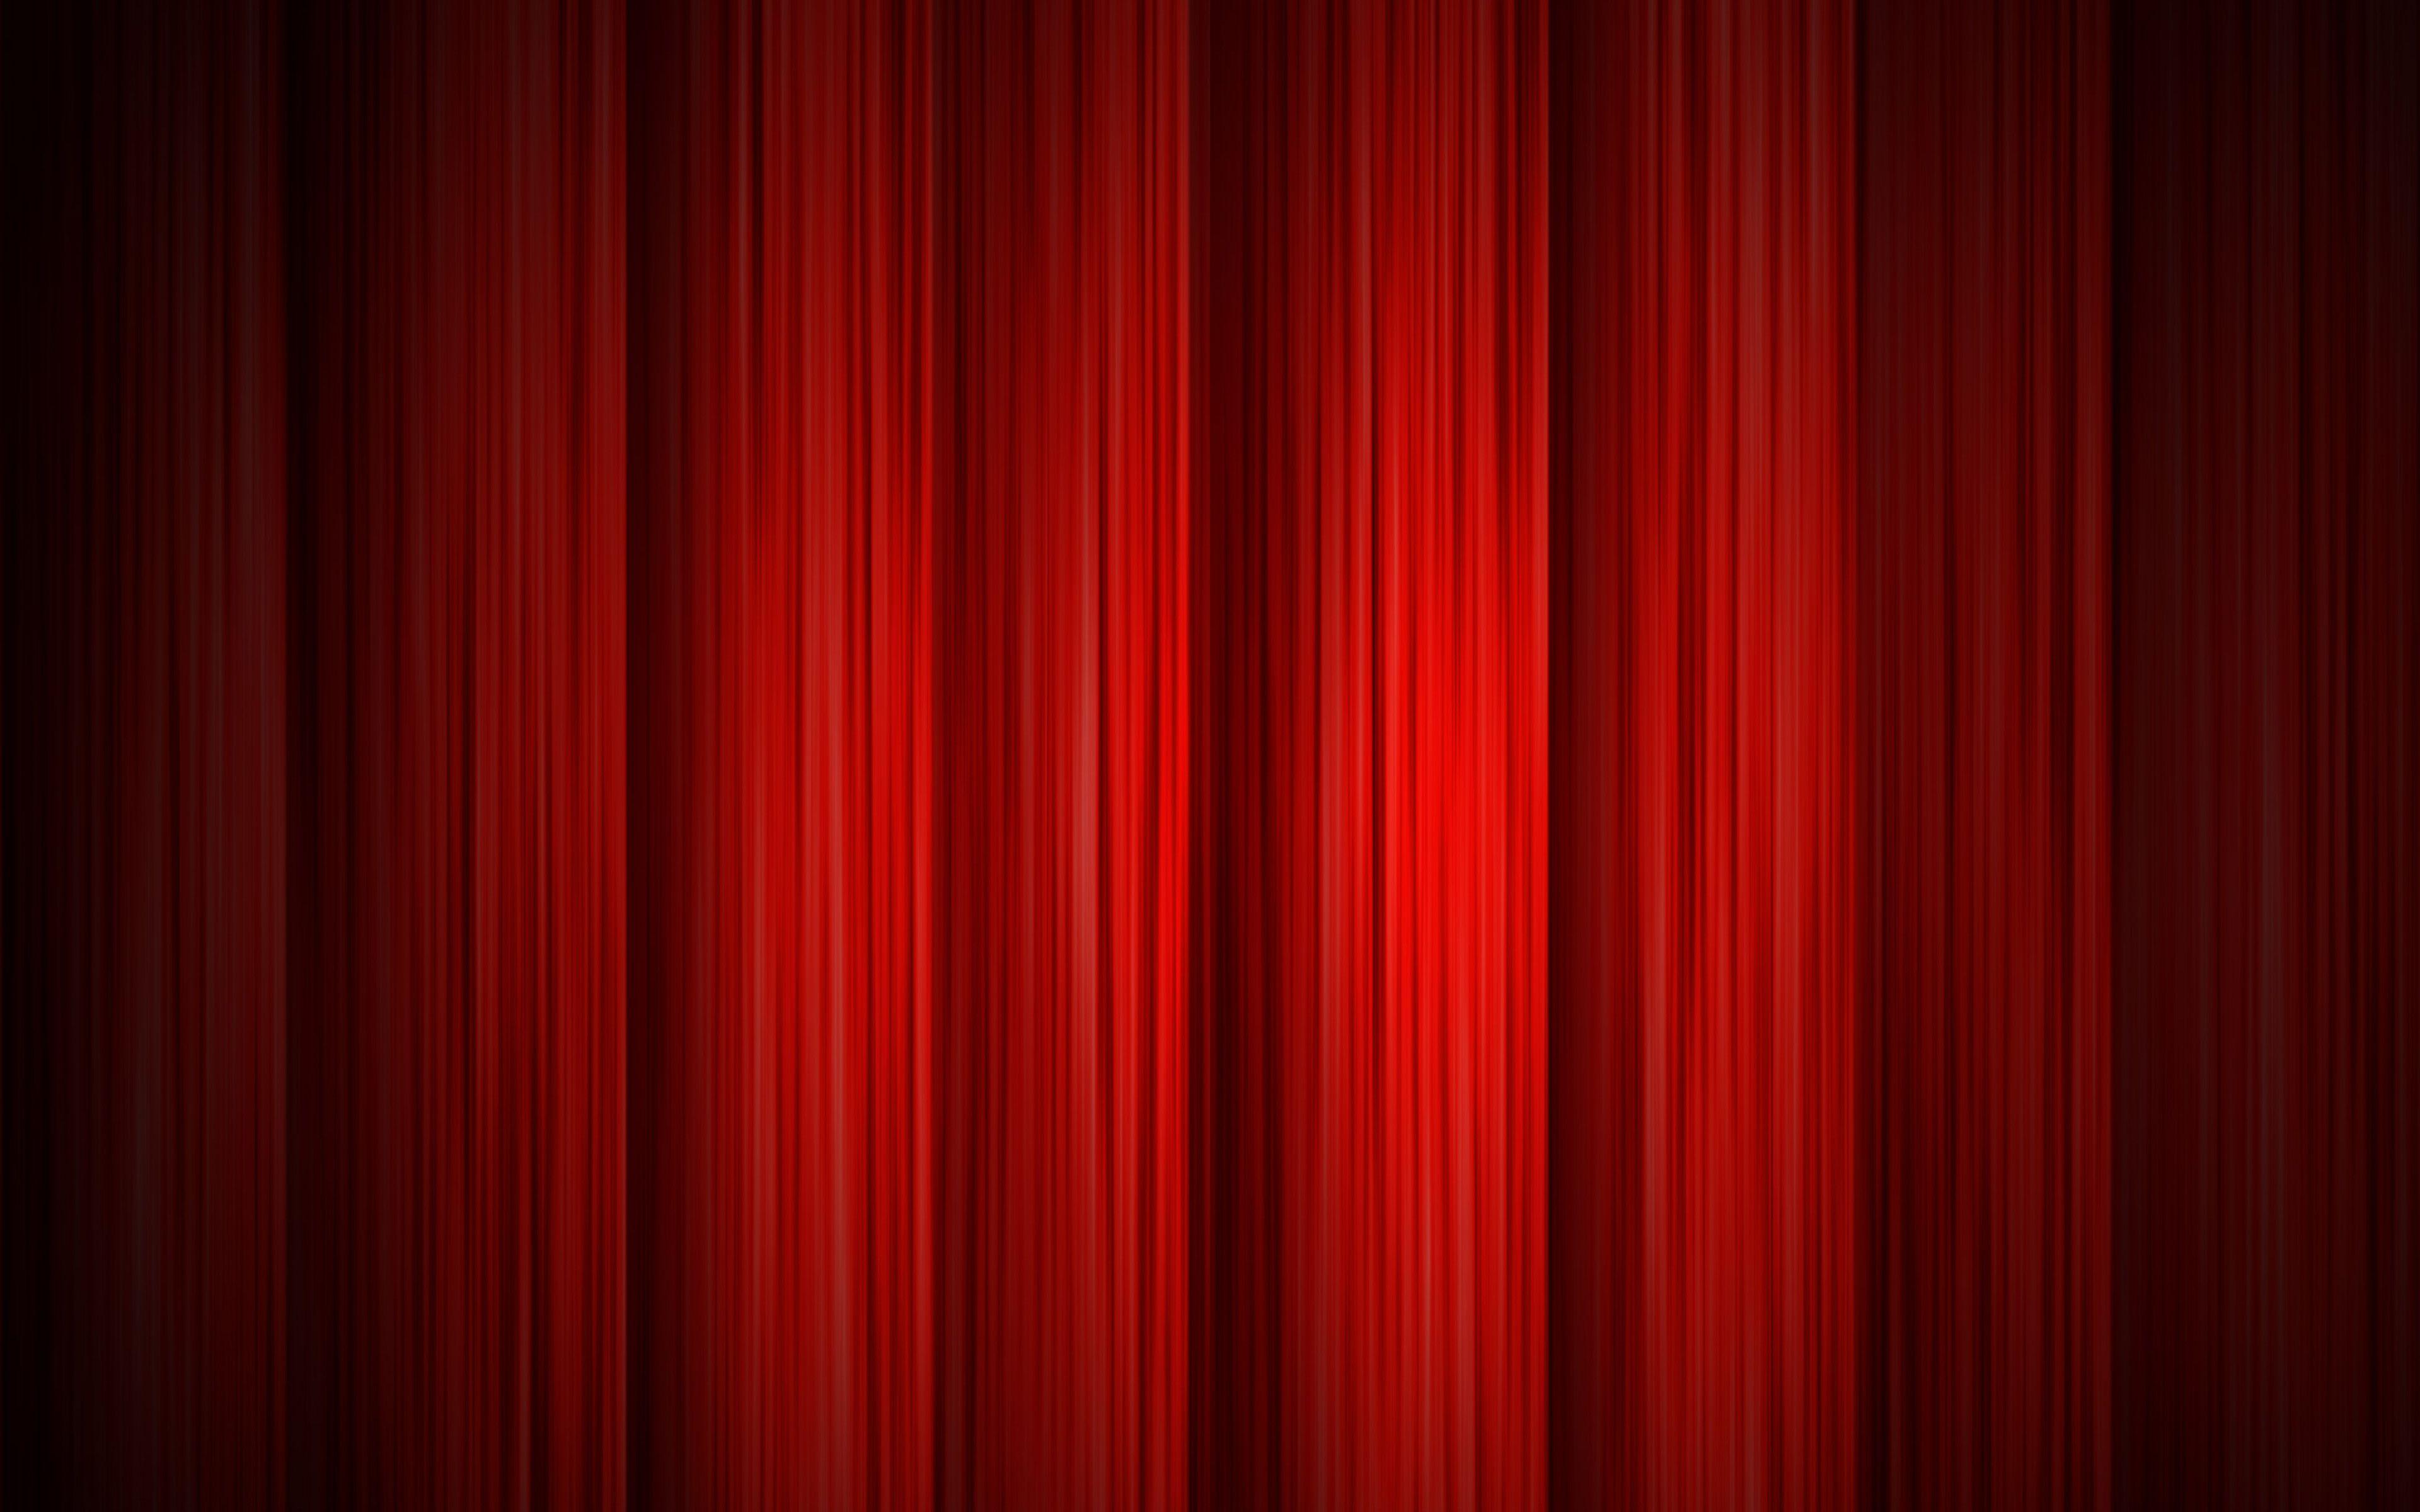 3840x2400 Tải xuống hình nền 4k, rèm đỏ, nền vải đỏ, rạp hát, vải đỏ, nhung đỏ, kết cấu vải, rèm, nền đỏ cho máy tính để bàn với độ phân giải 3840x2400.  Hình nền hình ảnh HD chất lượng cao